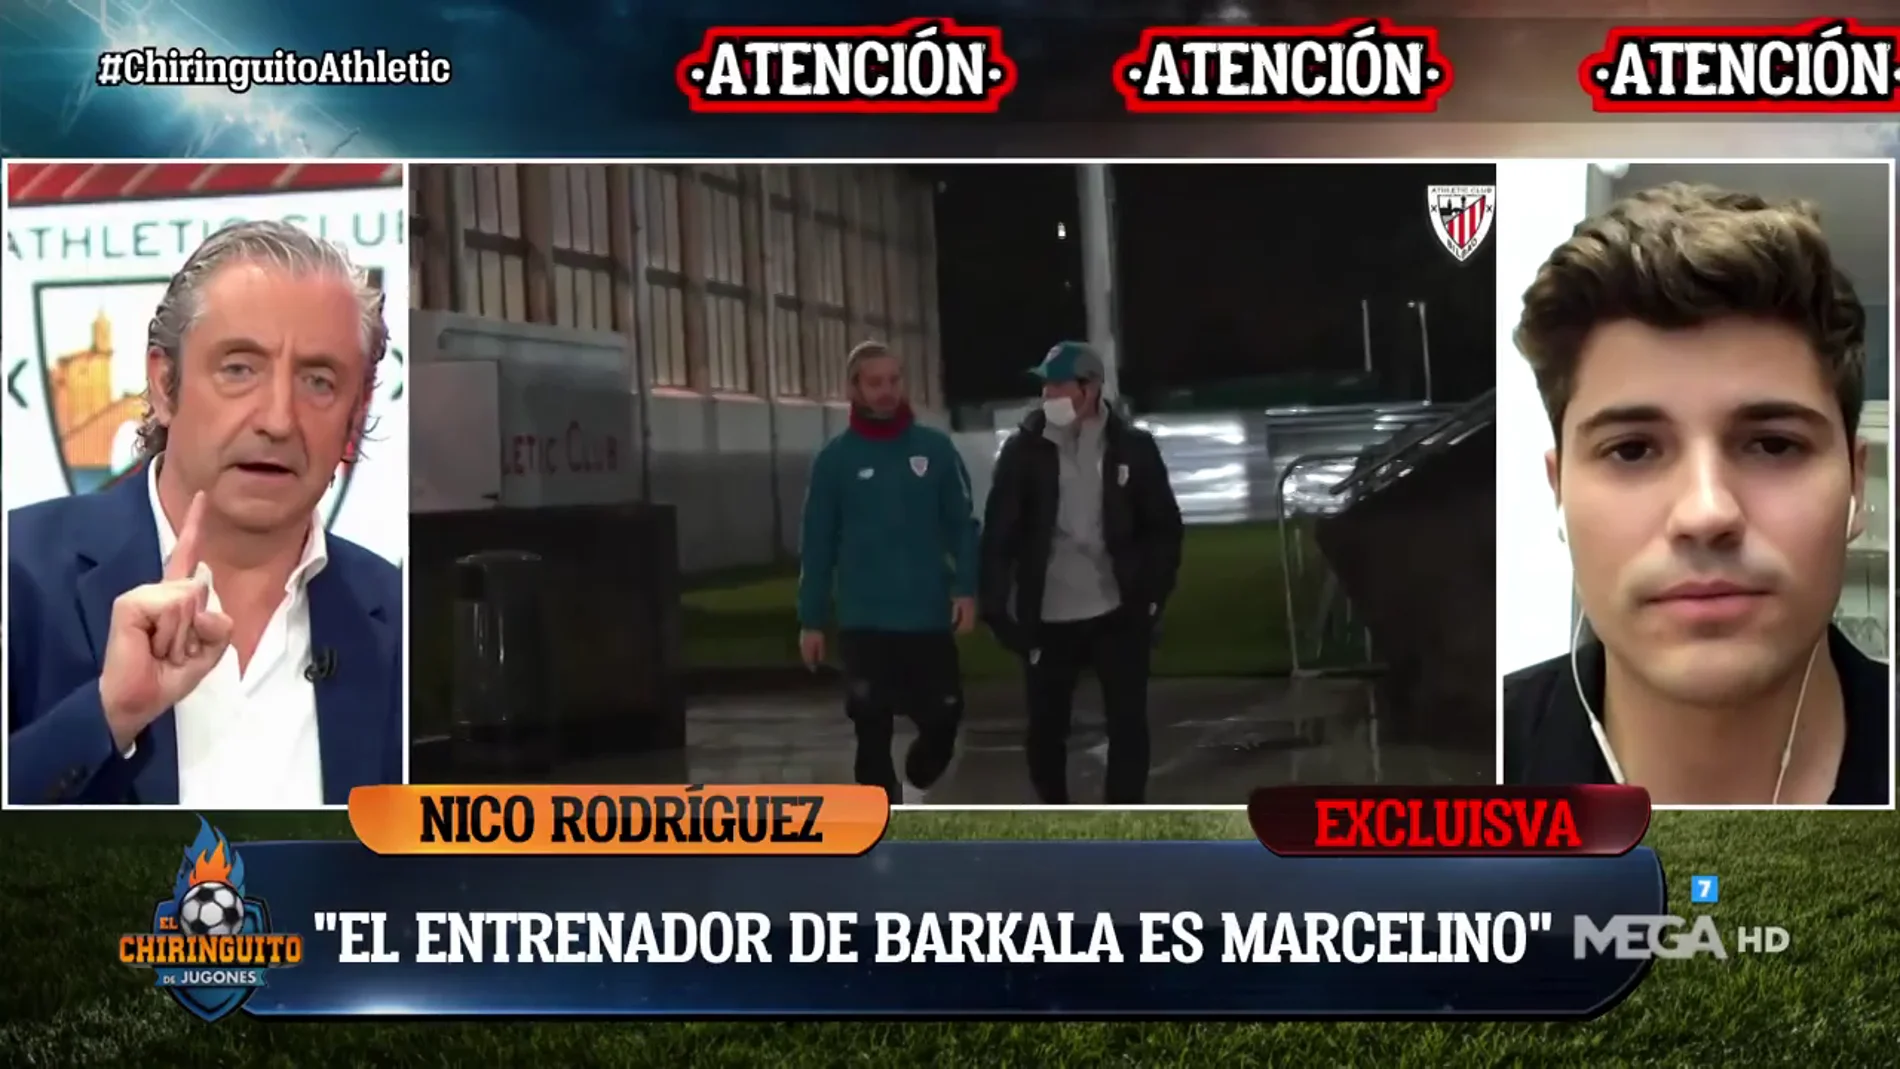 Nico Rodríguez: "El entrenador de Barkala es Marcelino"